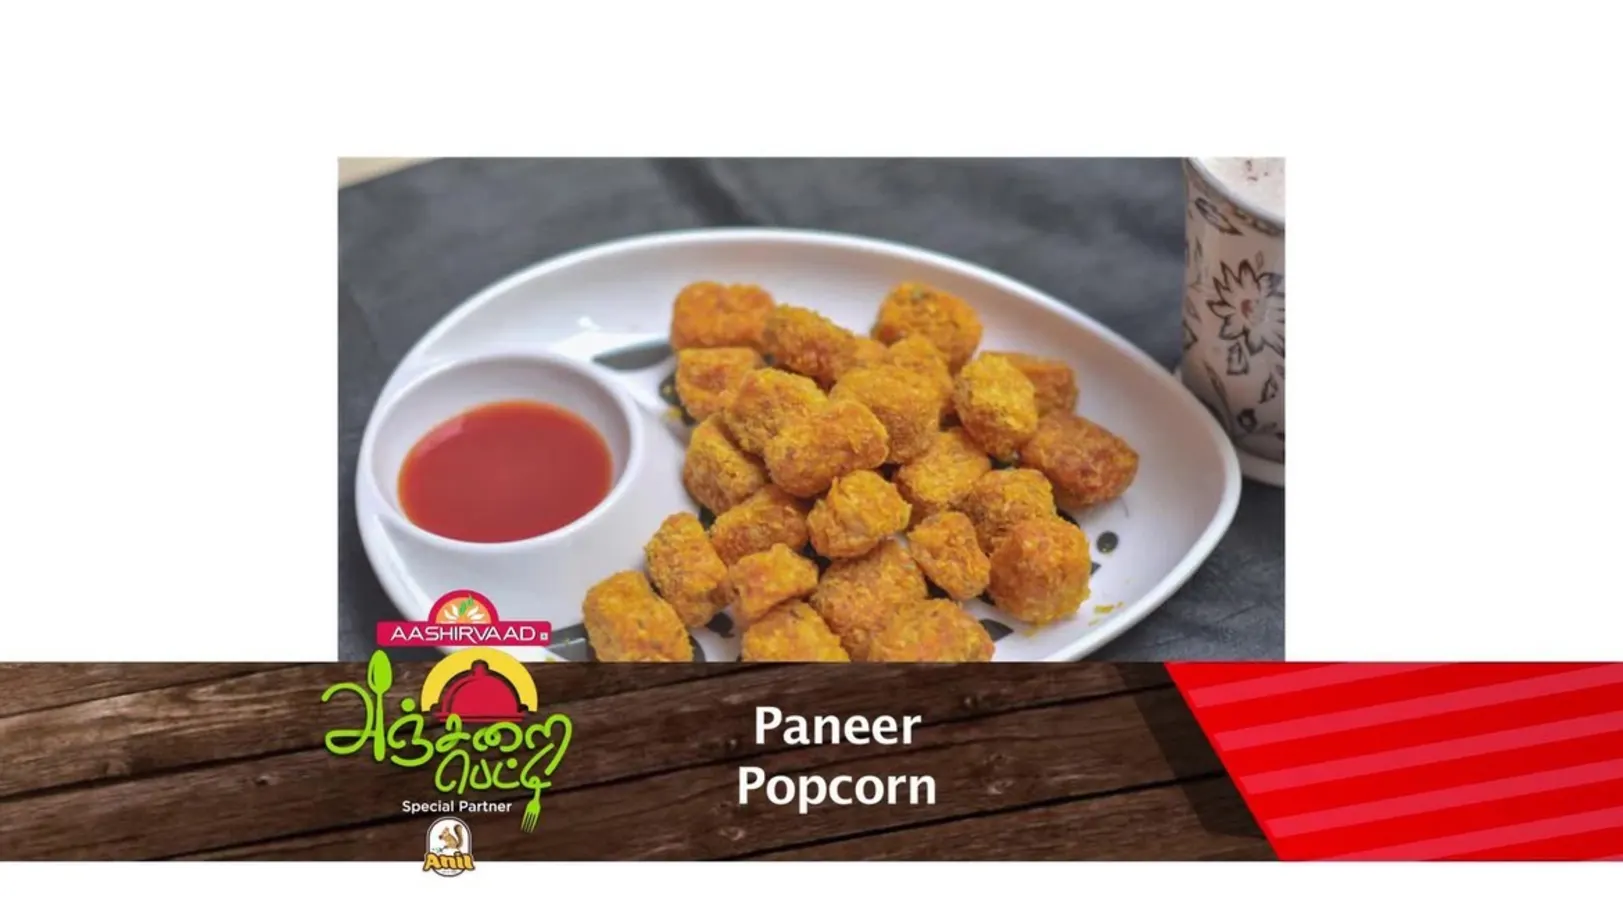 Paneer Popcorn - Anjarai Petti - June 13, 2019 